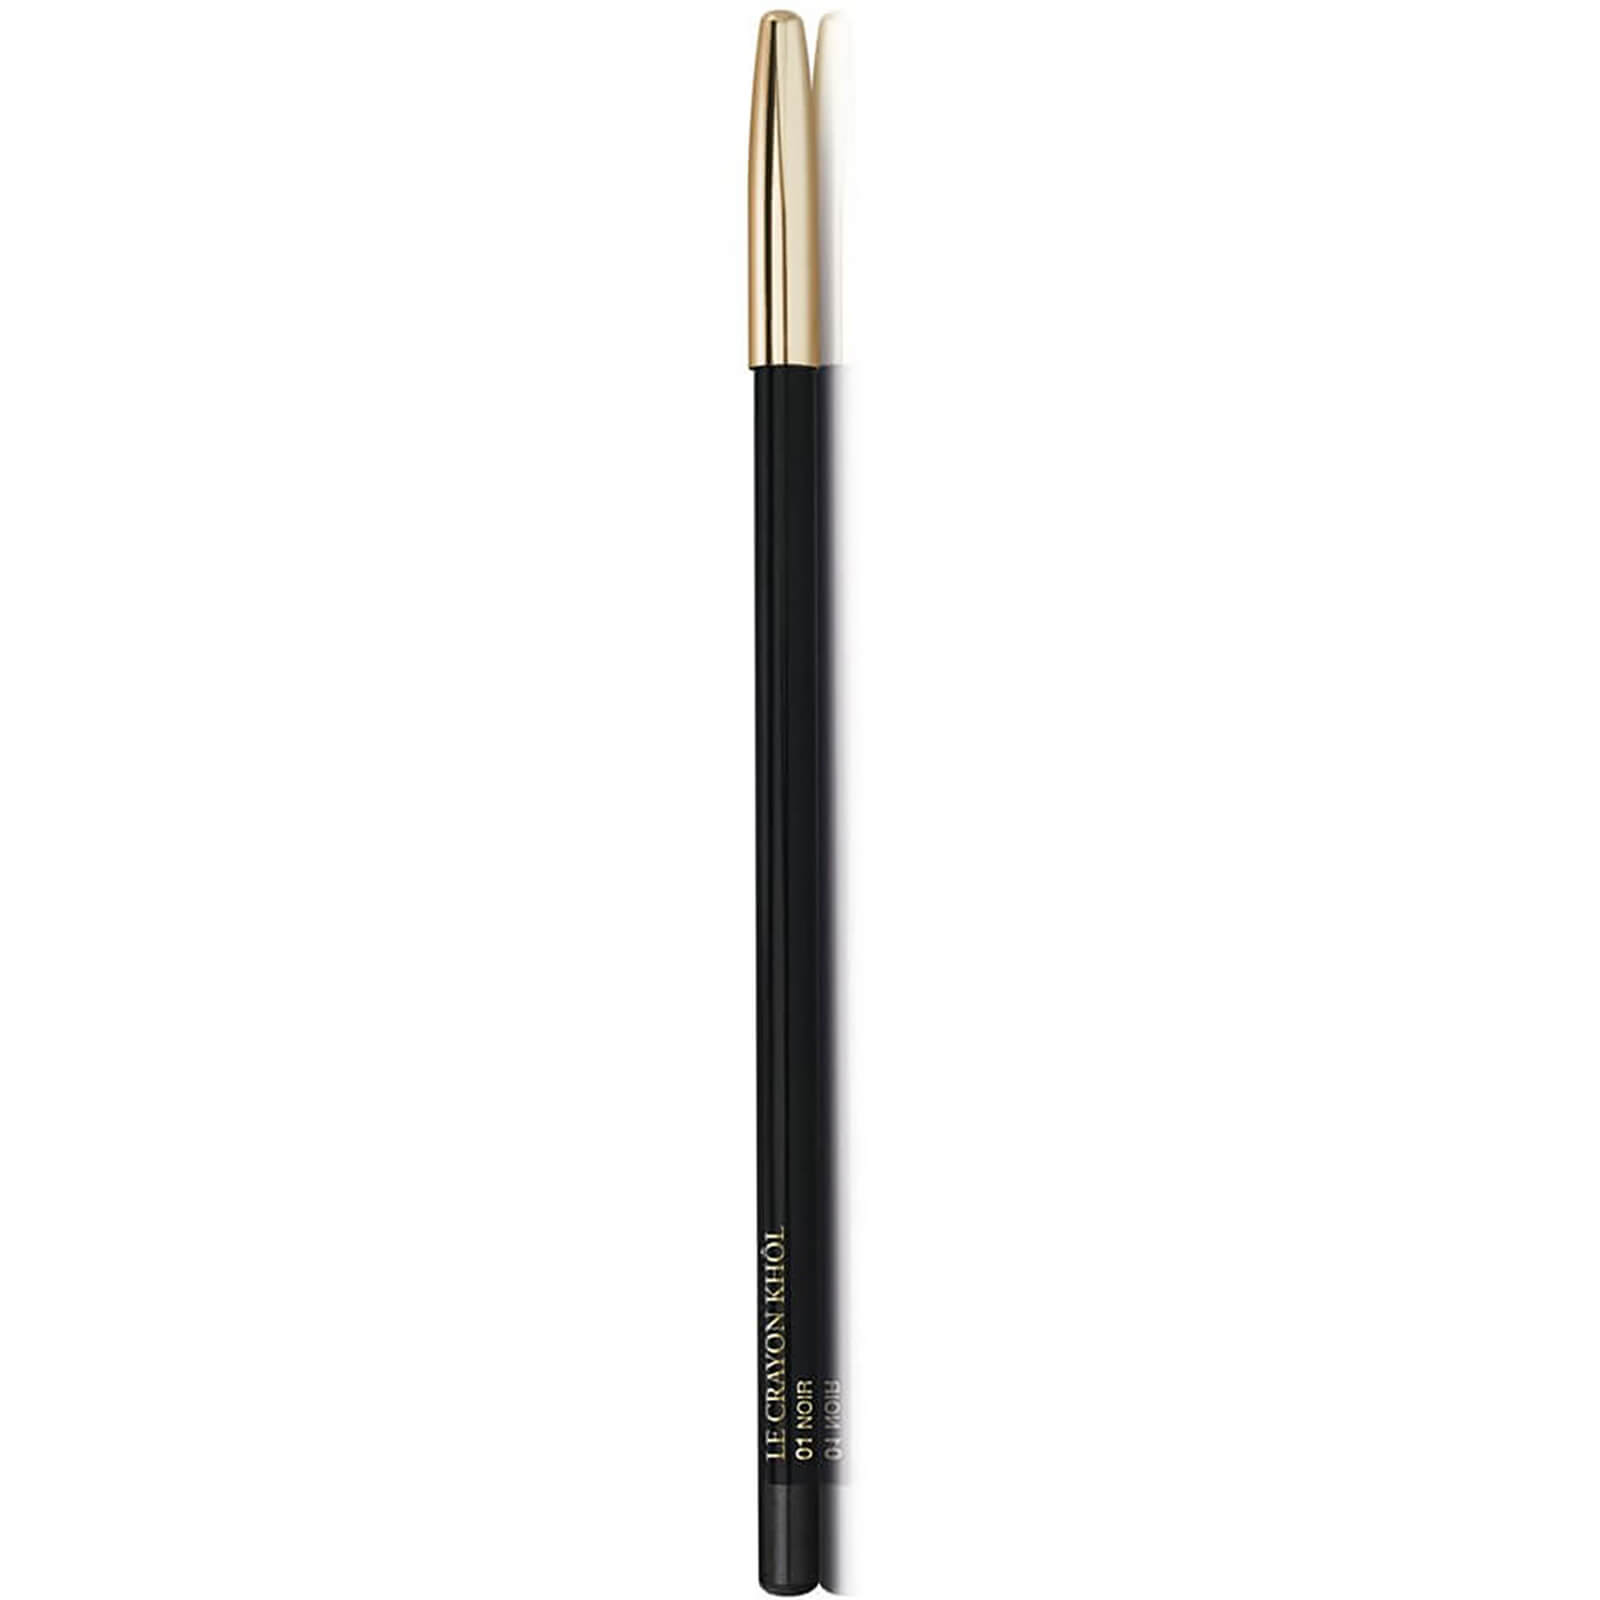 Lancôme Le Crayon Khol Eyeliner 1,8g - 01 Noir von Lancome